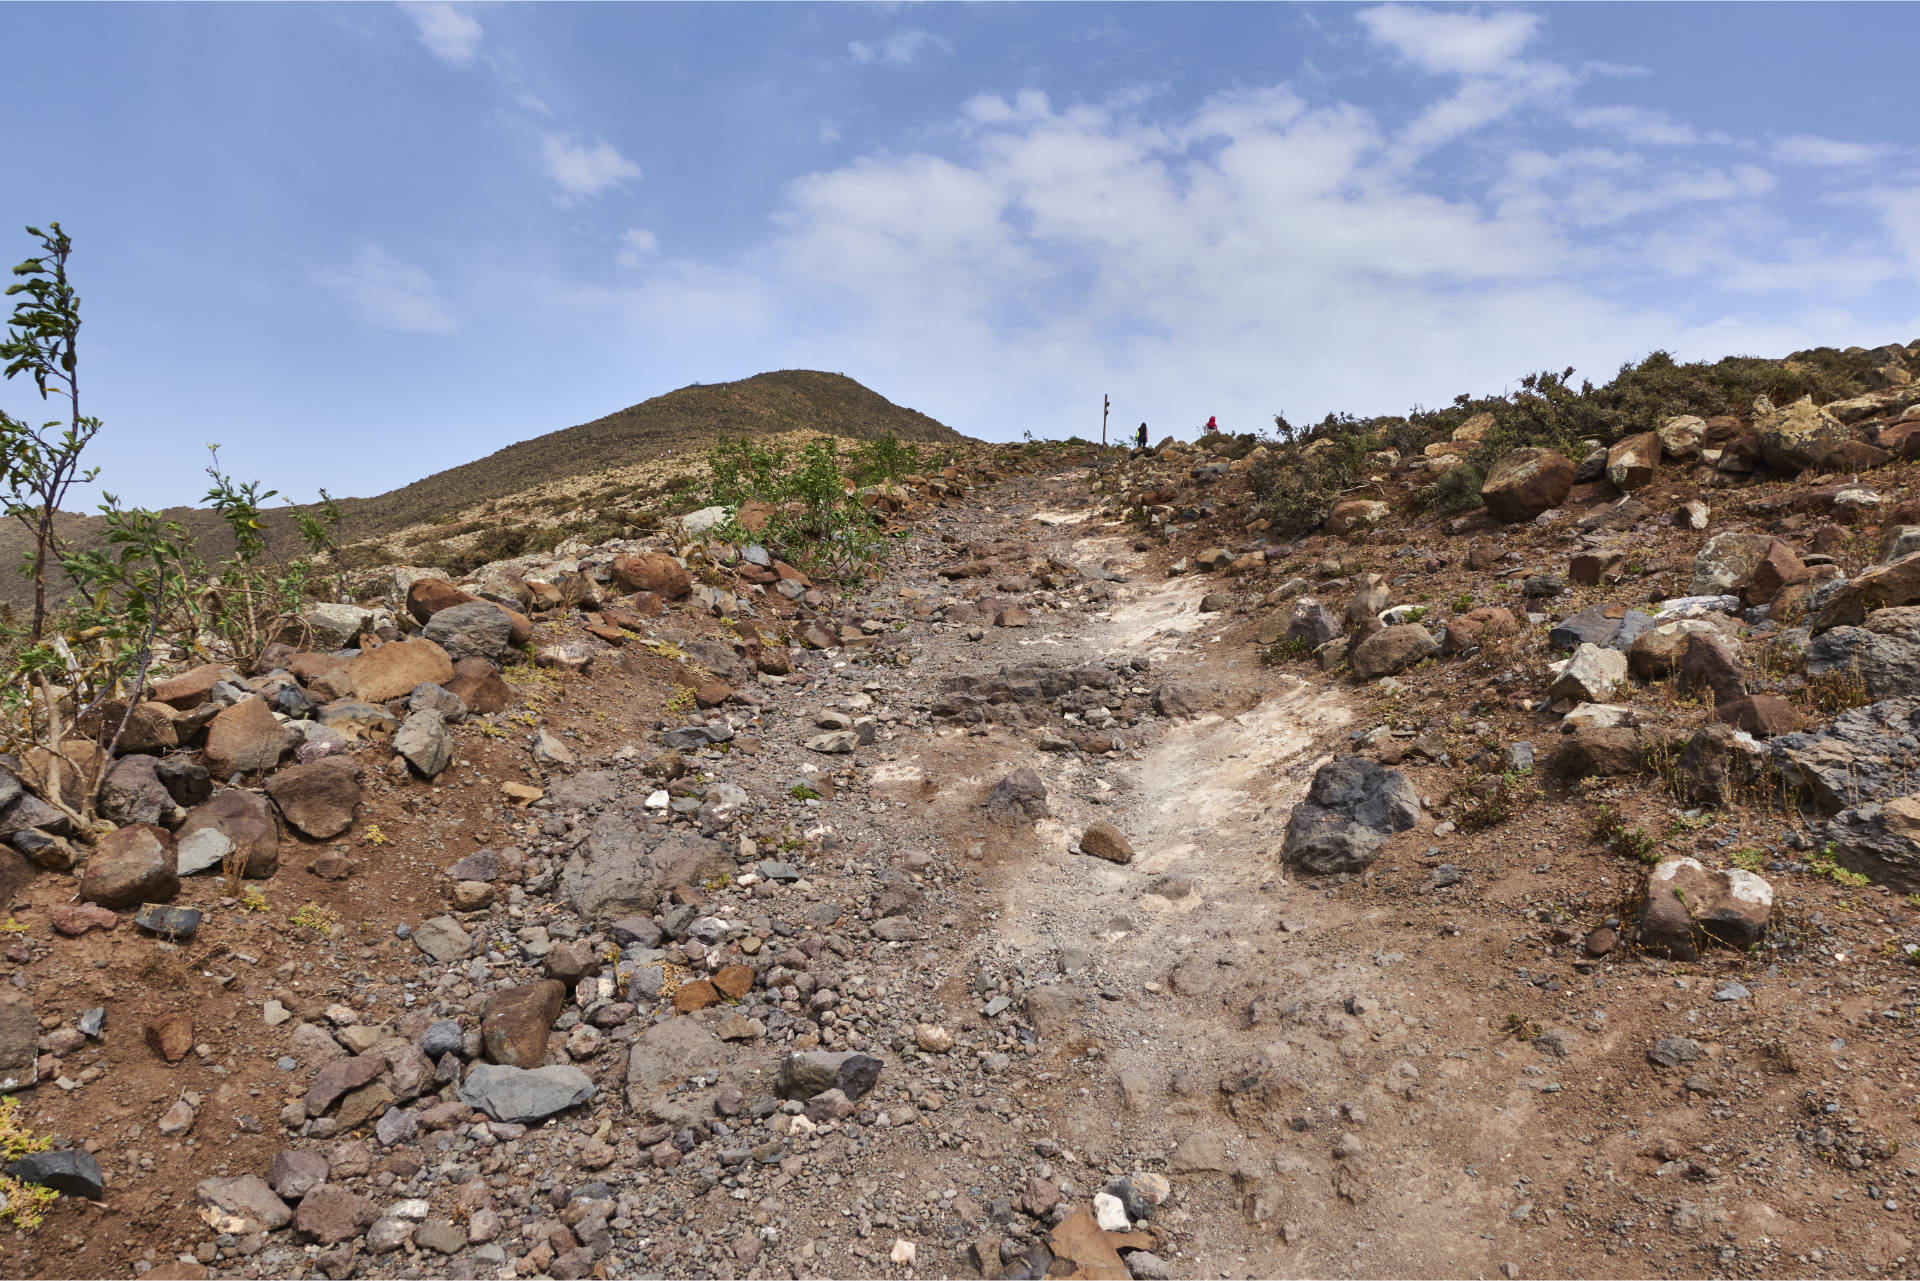 Der Jeepweg wird schlechter und steiler, endet an einem Wegweiser auf 607m, ein guter Wanderweg leitet zum Pico de la Zarza.